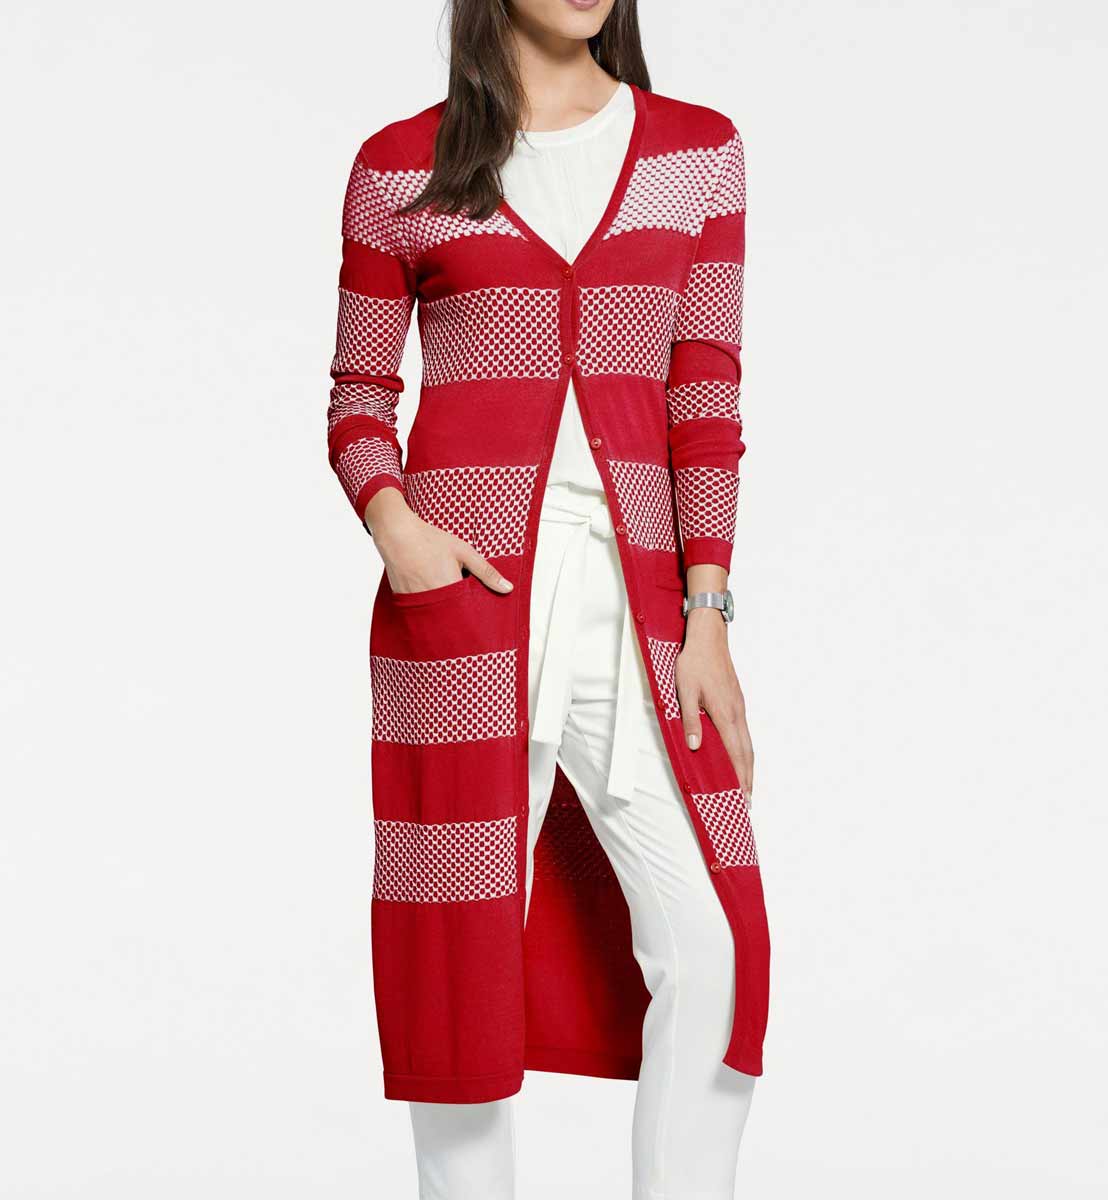 Úpletový pletený sveter PATRIZIA DINI, červený + ecru